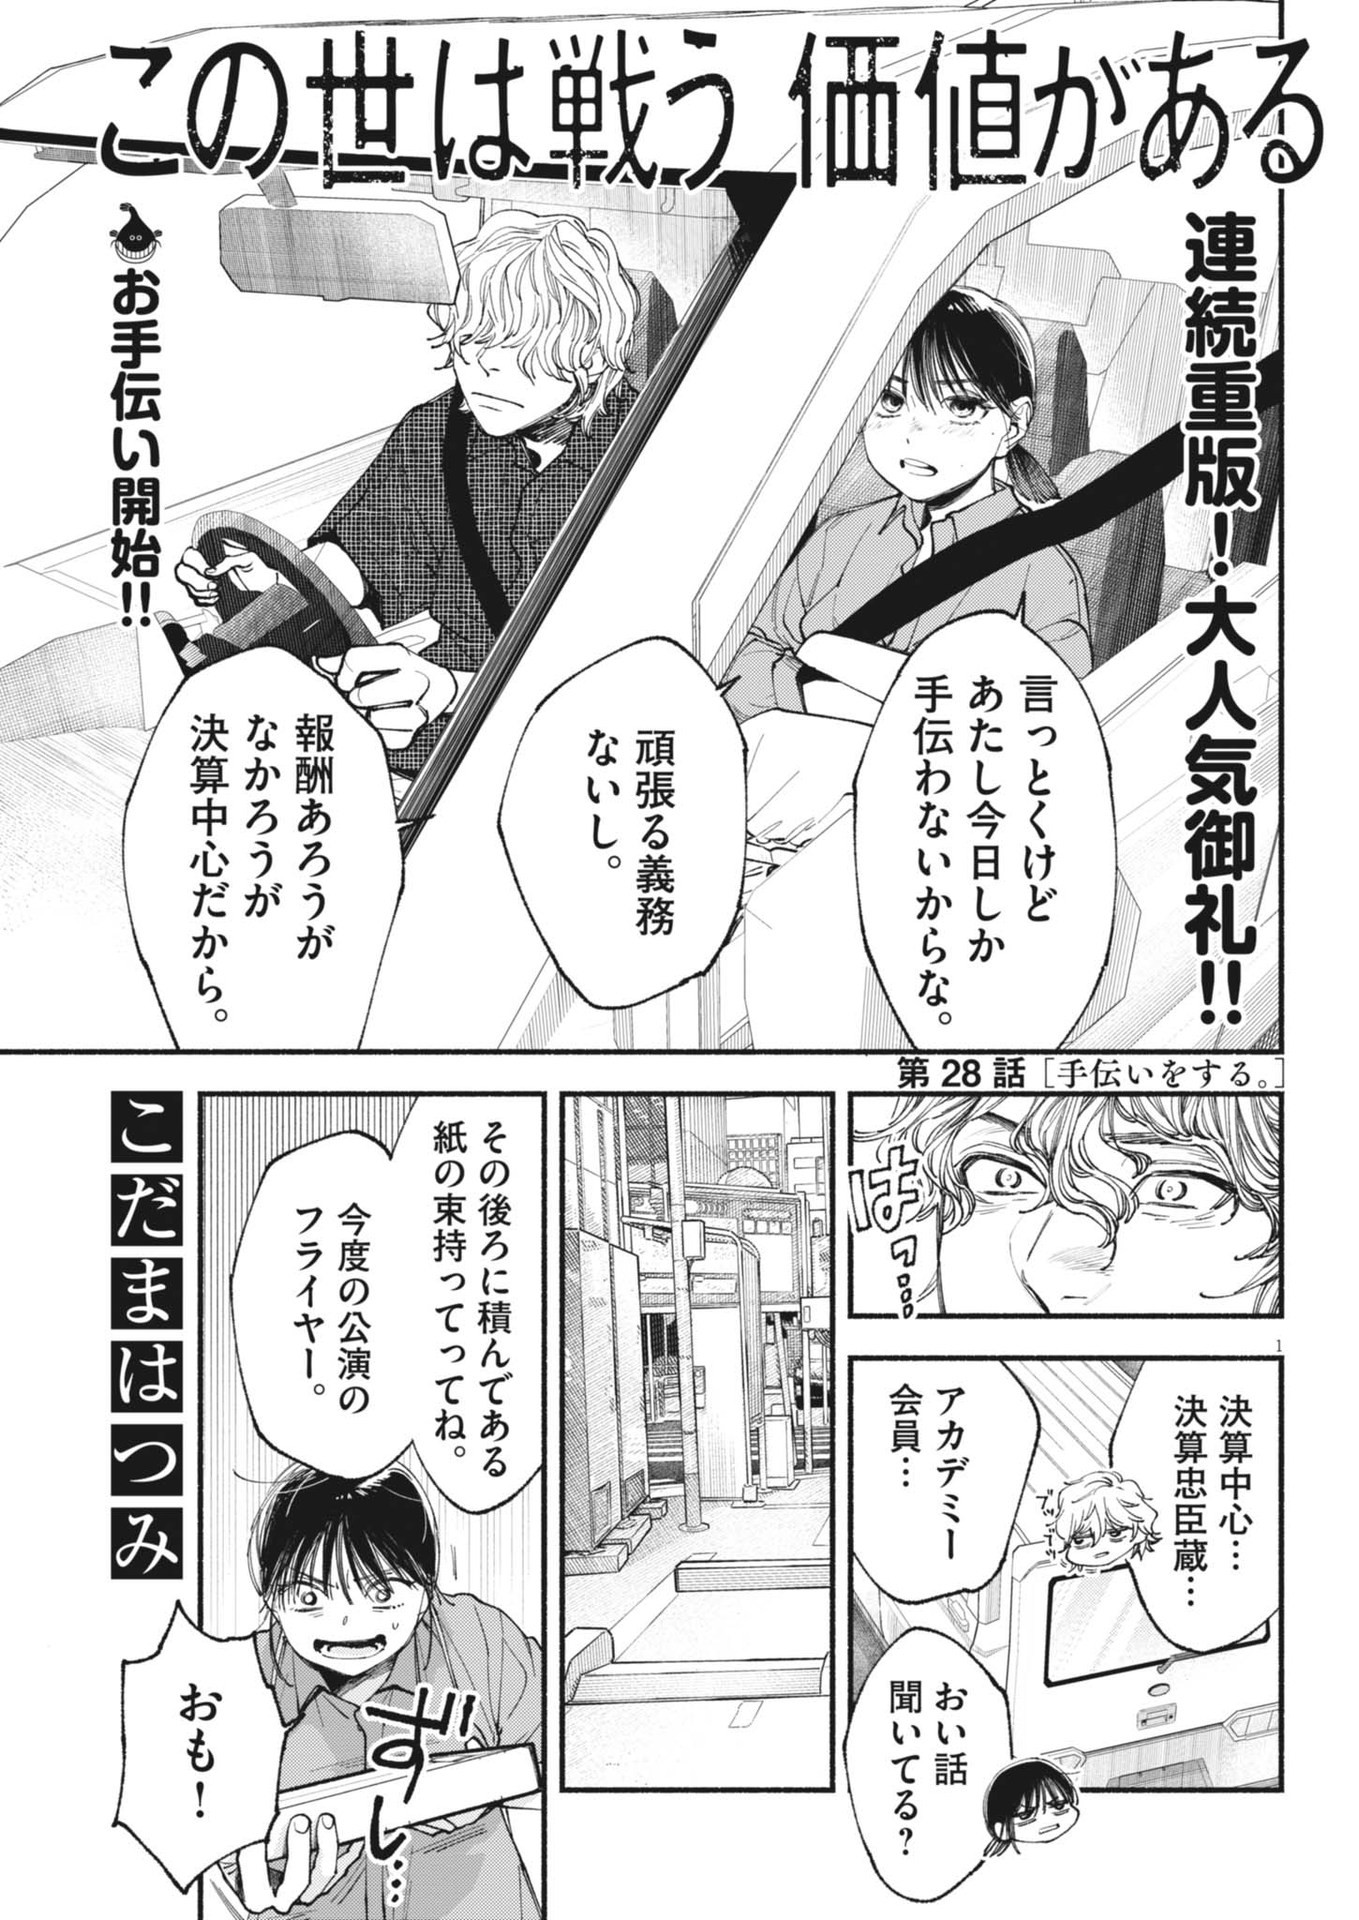 Konoyo wa Tatakau Kachi ga Aru  - Chapter 28 - Page 1